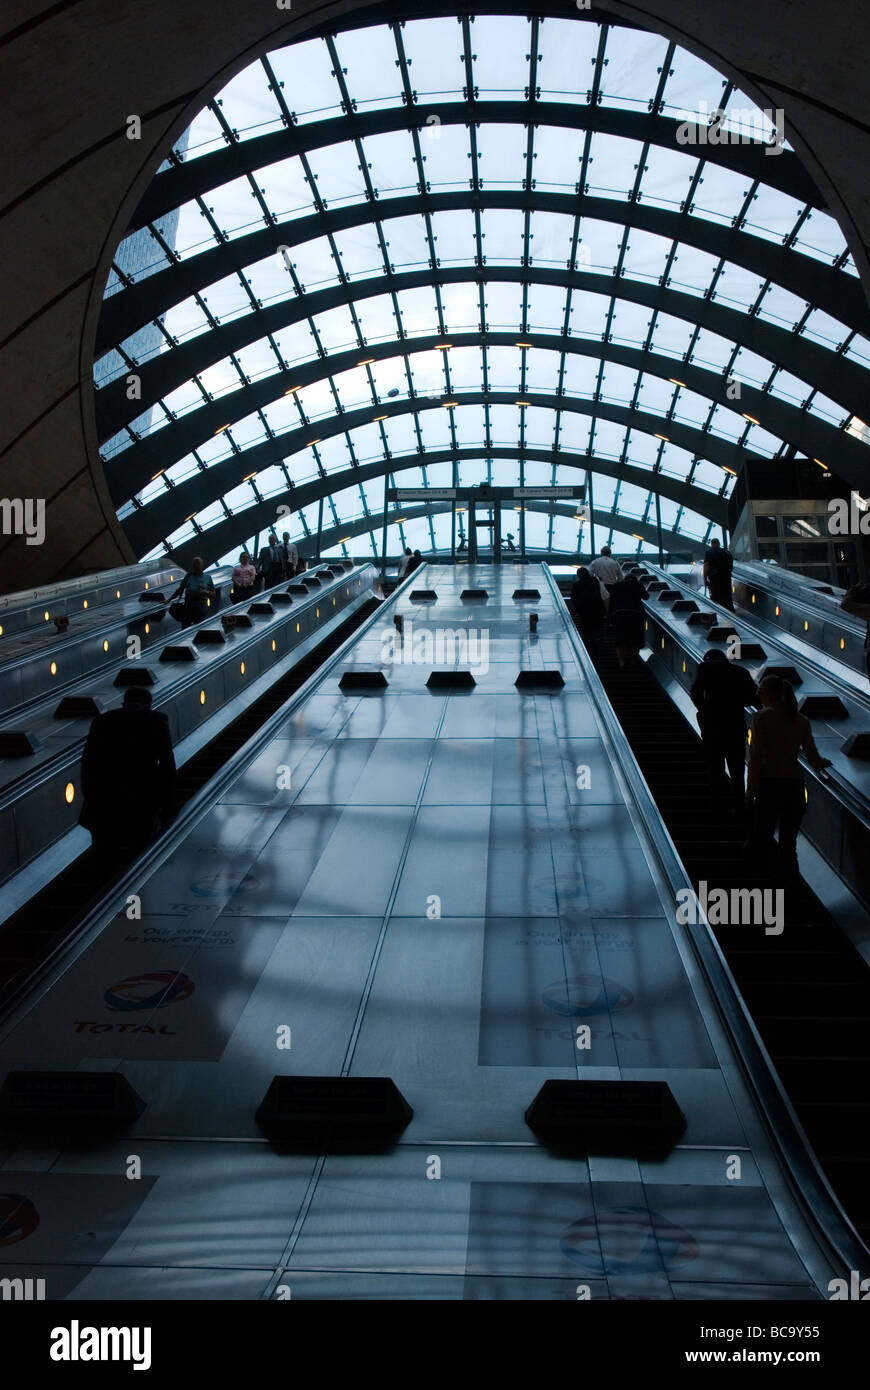 Les passagers sur les escaliers mécaniques à la station de métro Canary Wharf, Londres Dockland England UK Banque D'Images